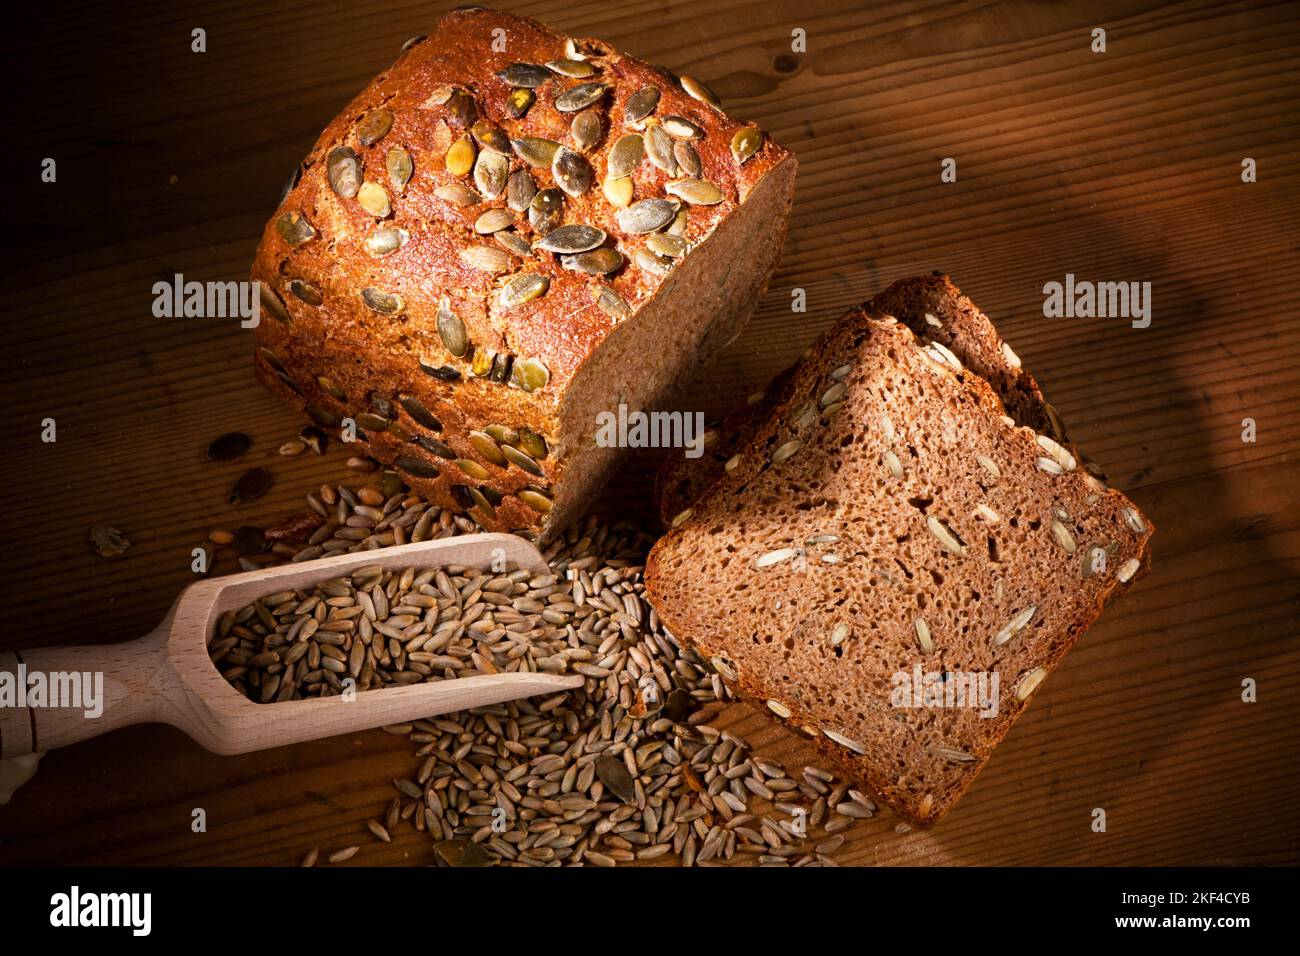 Ein frisches Brot mit Kürbiskernen zur gesunden Ernährung. Backwaren, Schwarzbrot, Getreide auf einer Schaufel, Stock Photo